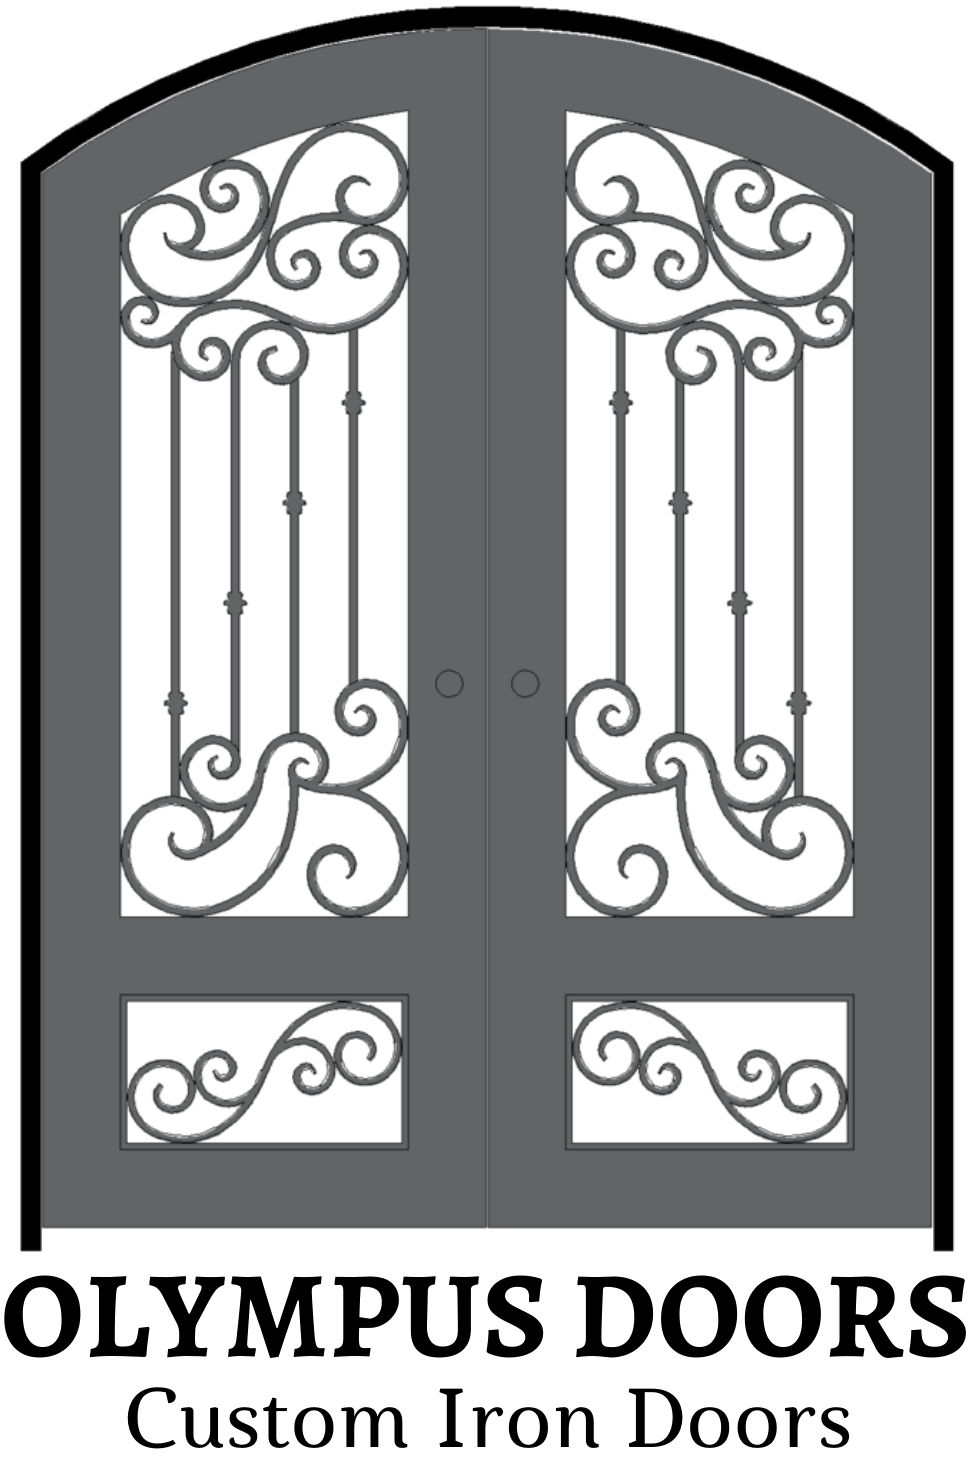 Olympus Doors